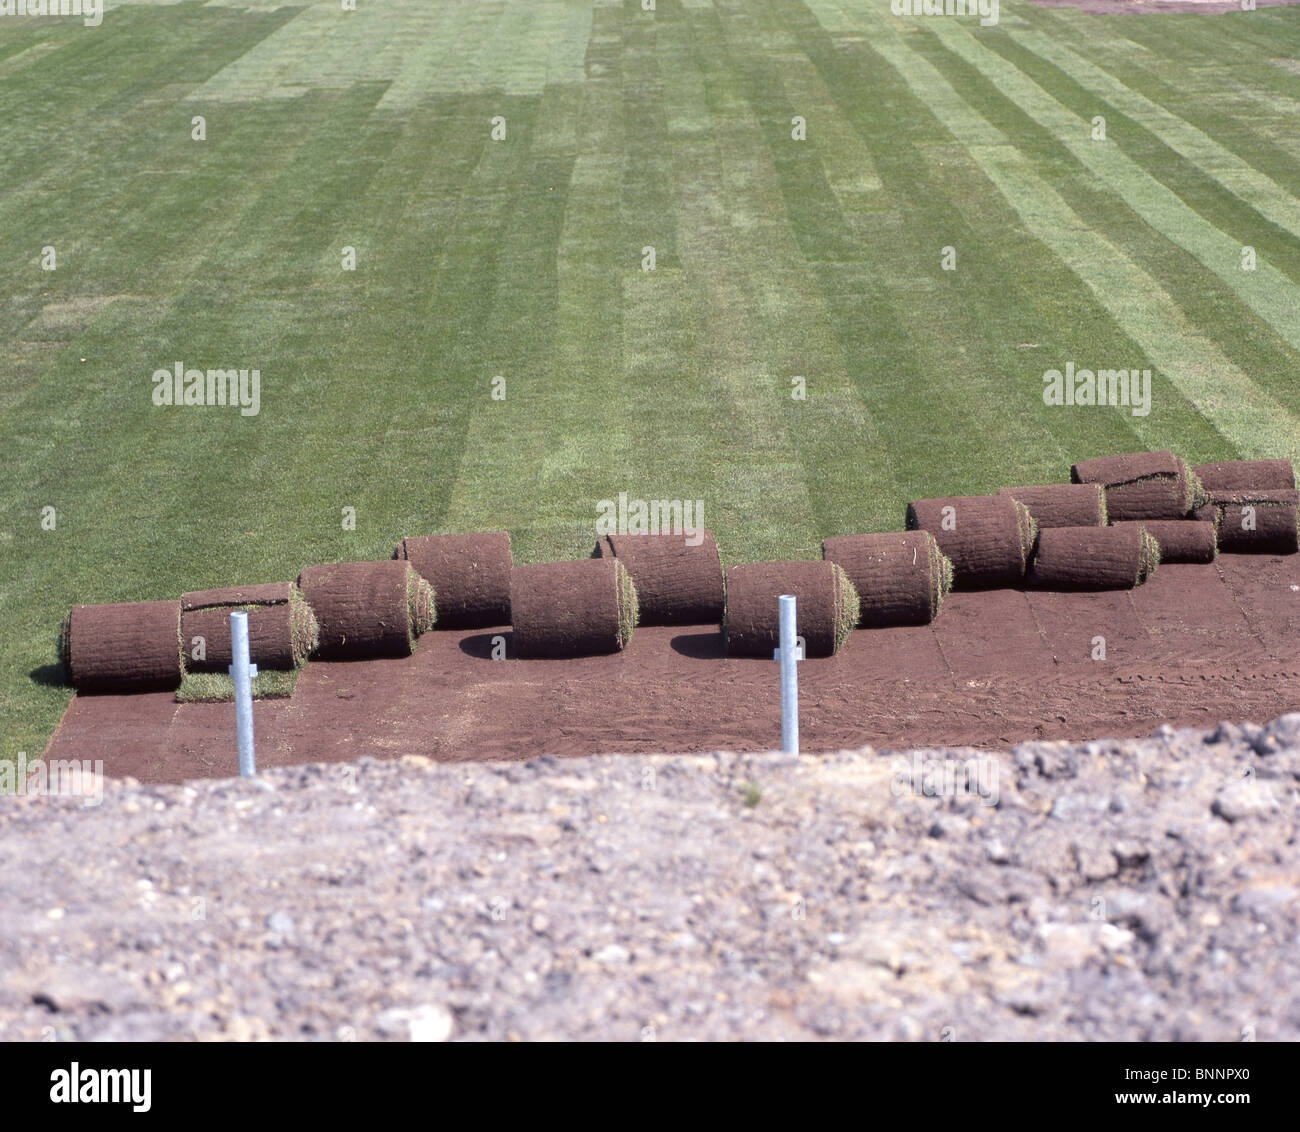 Rasen ausgerollt aufrollen Rasen Teppich Fußball Fußball Wiese Rasen Sport  Bereich Fußball Feld Preparieren Sport Schweiz Stockfotografie - Alamy